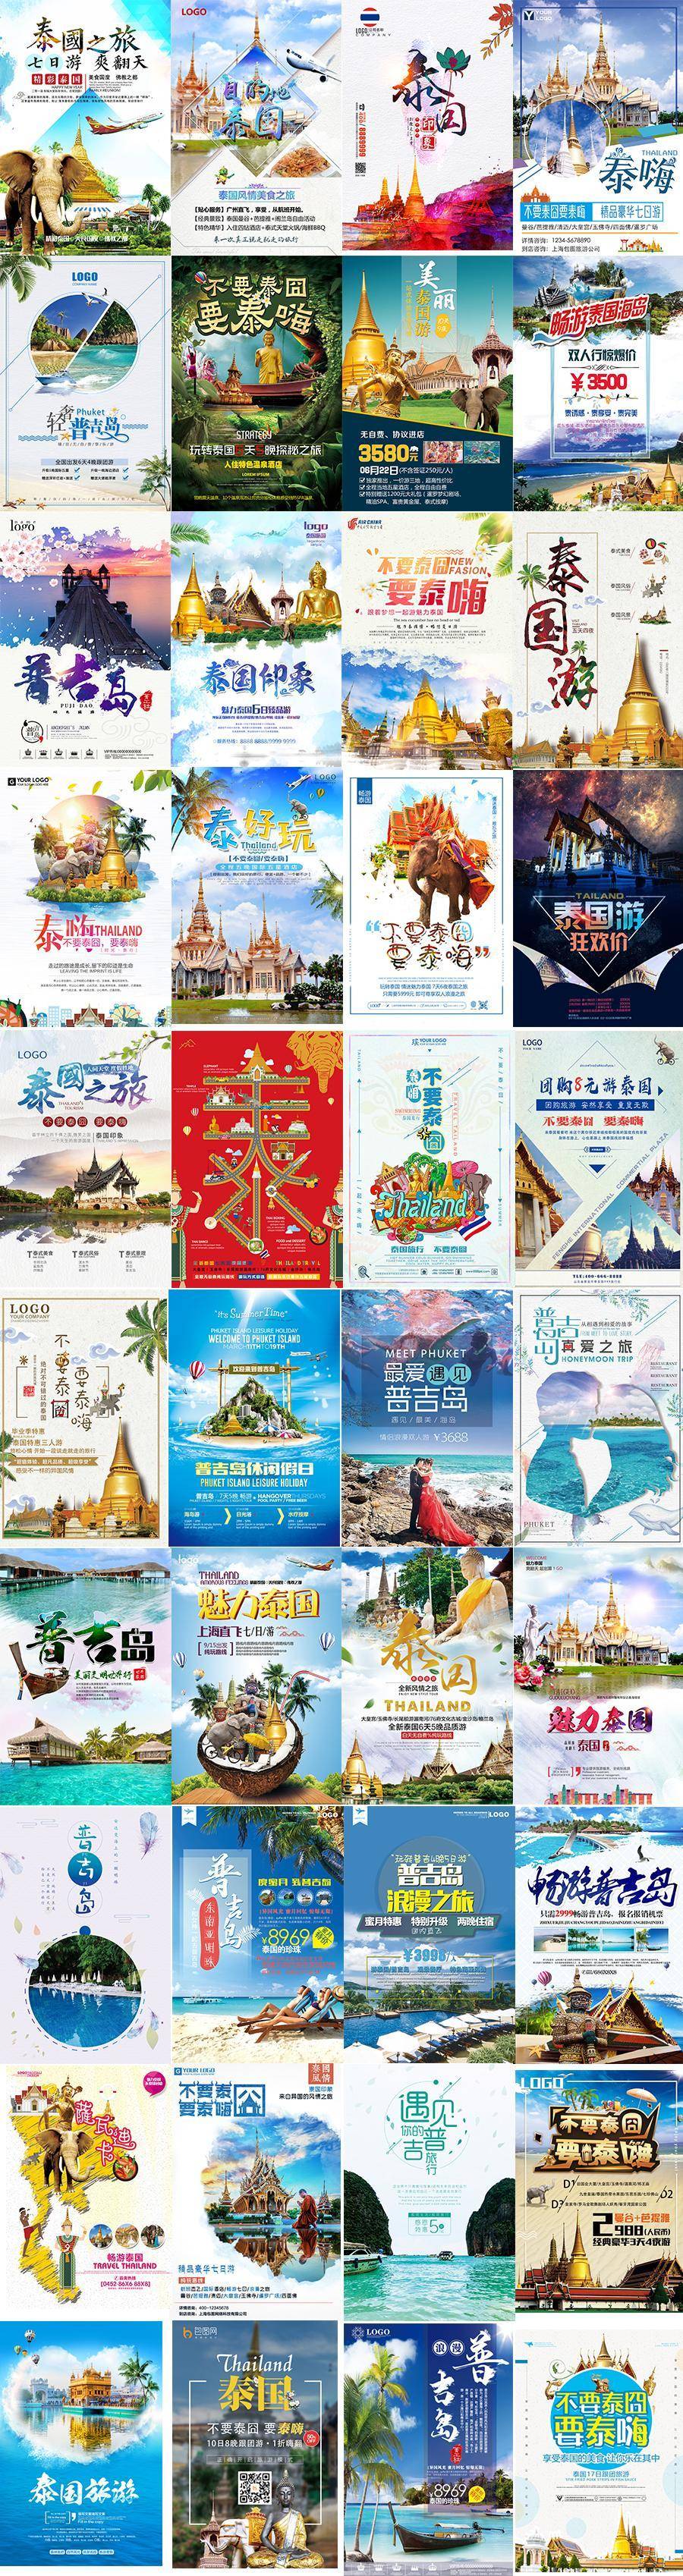 40款泰国旅游海报PSD素材